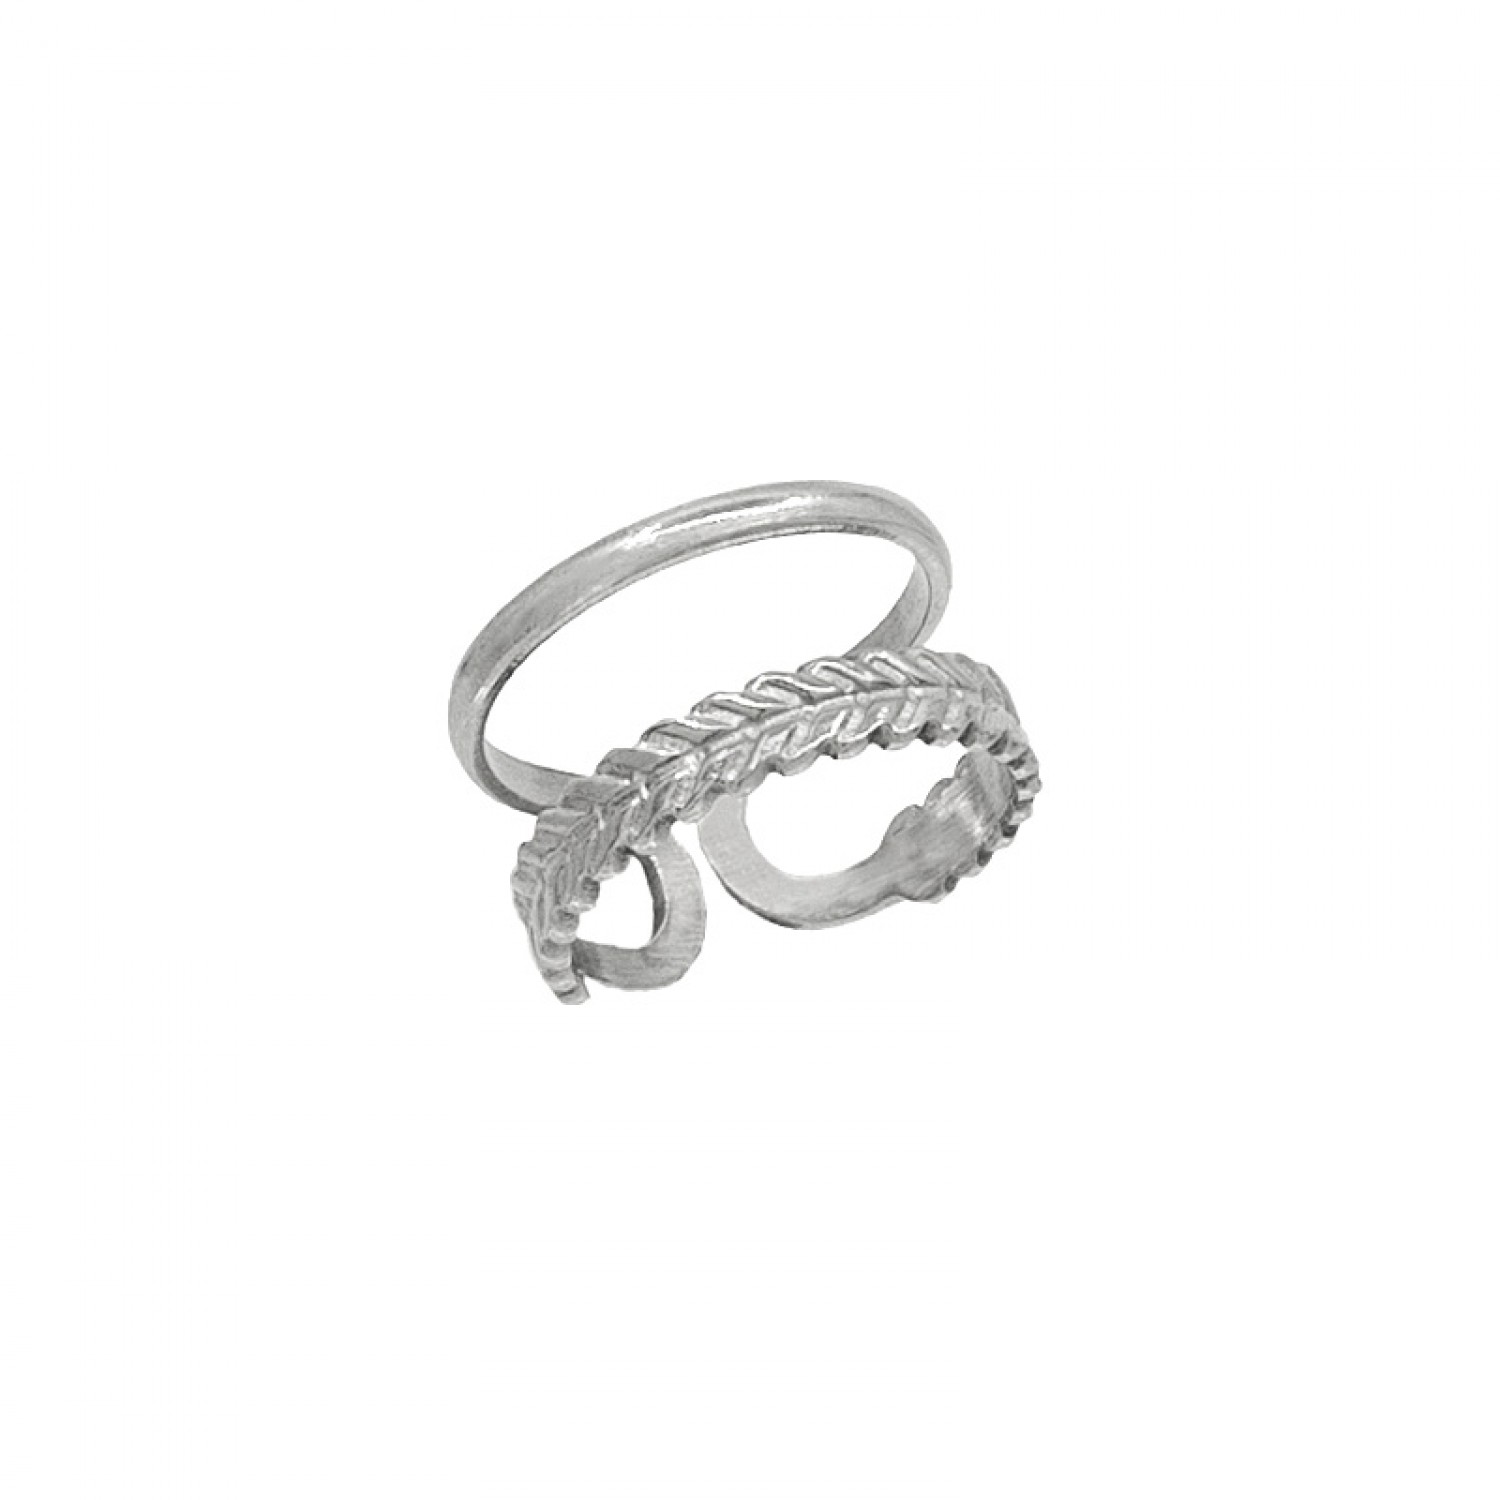 Ατσάλινο δαχτυλίδι διπλό με σκαλιστό design